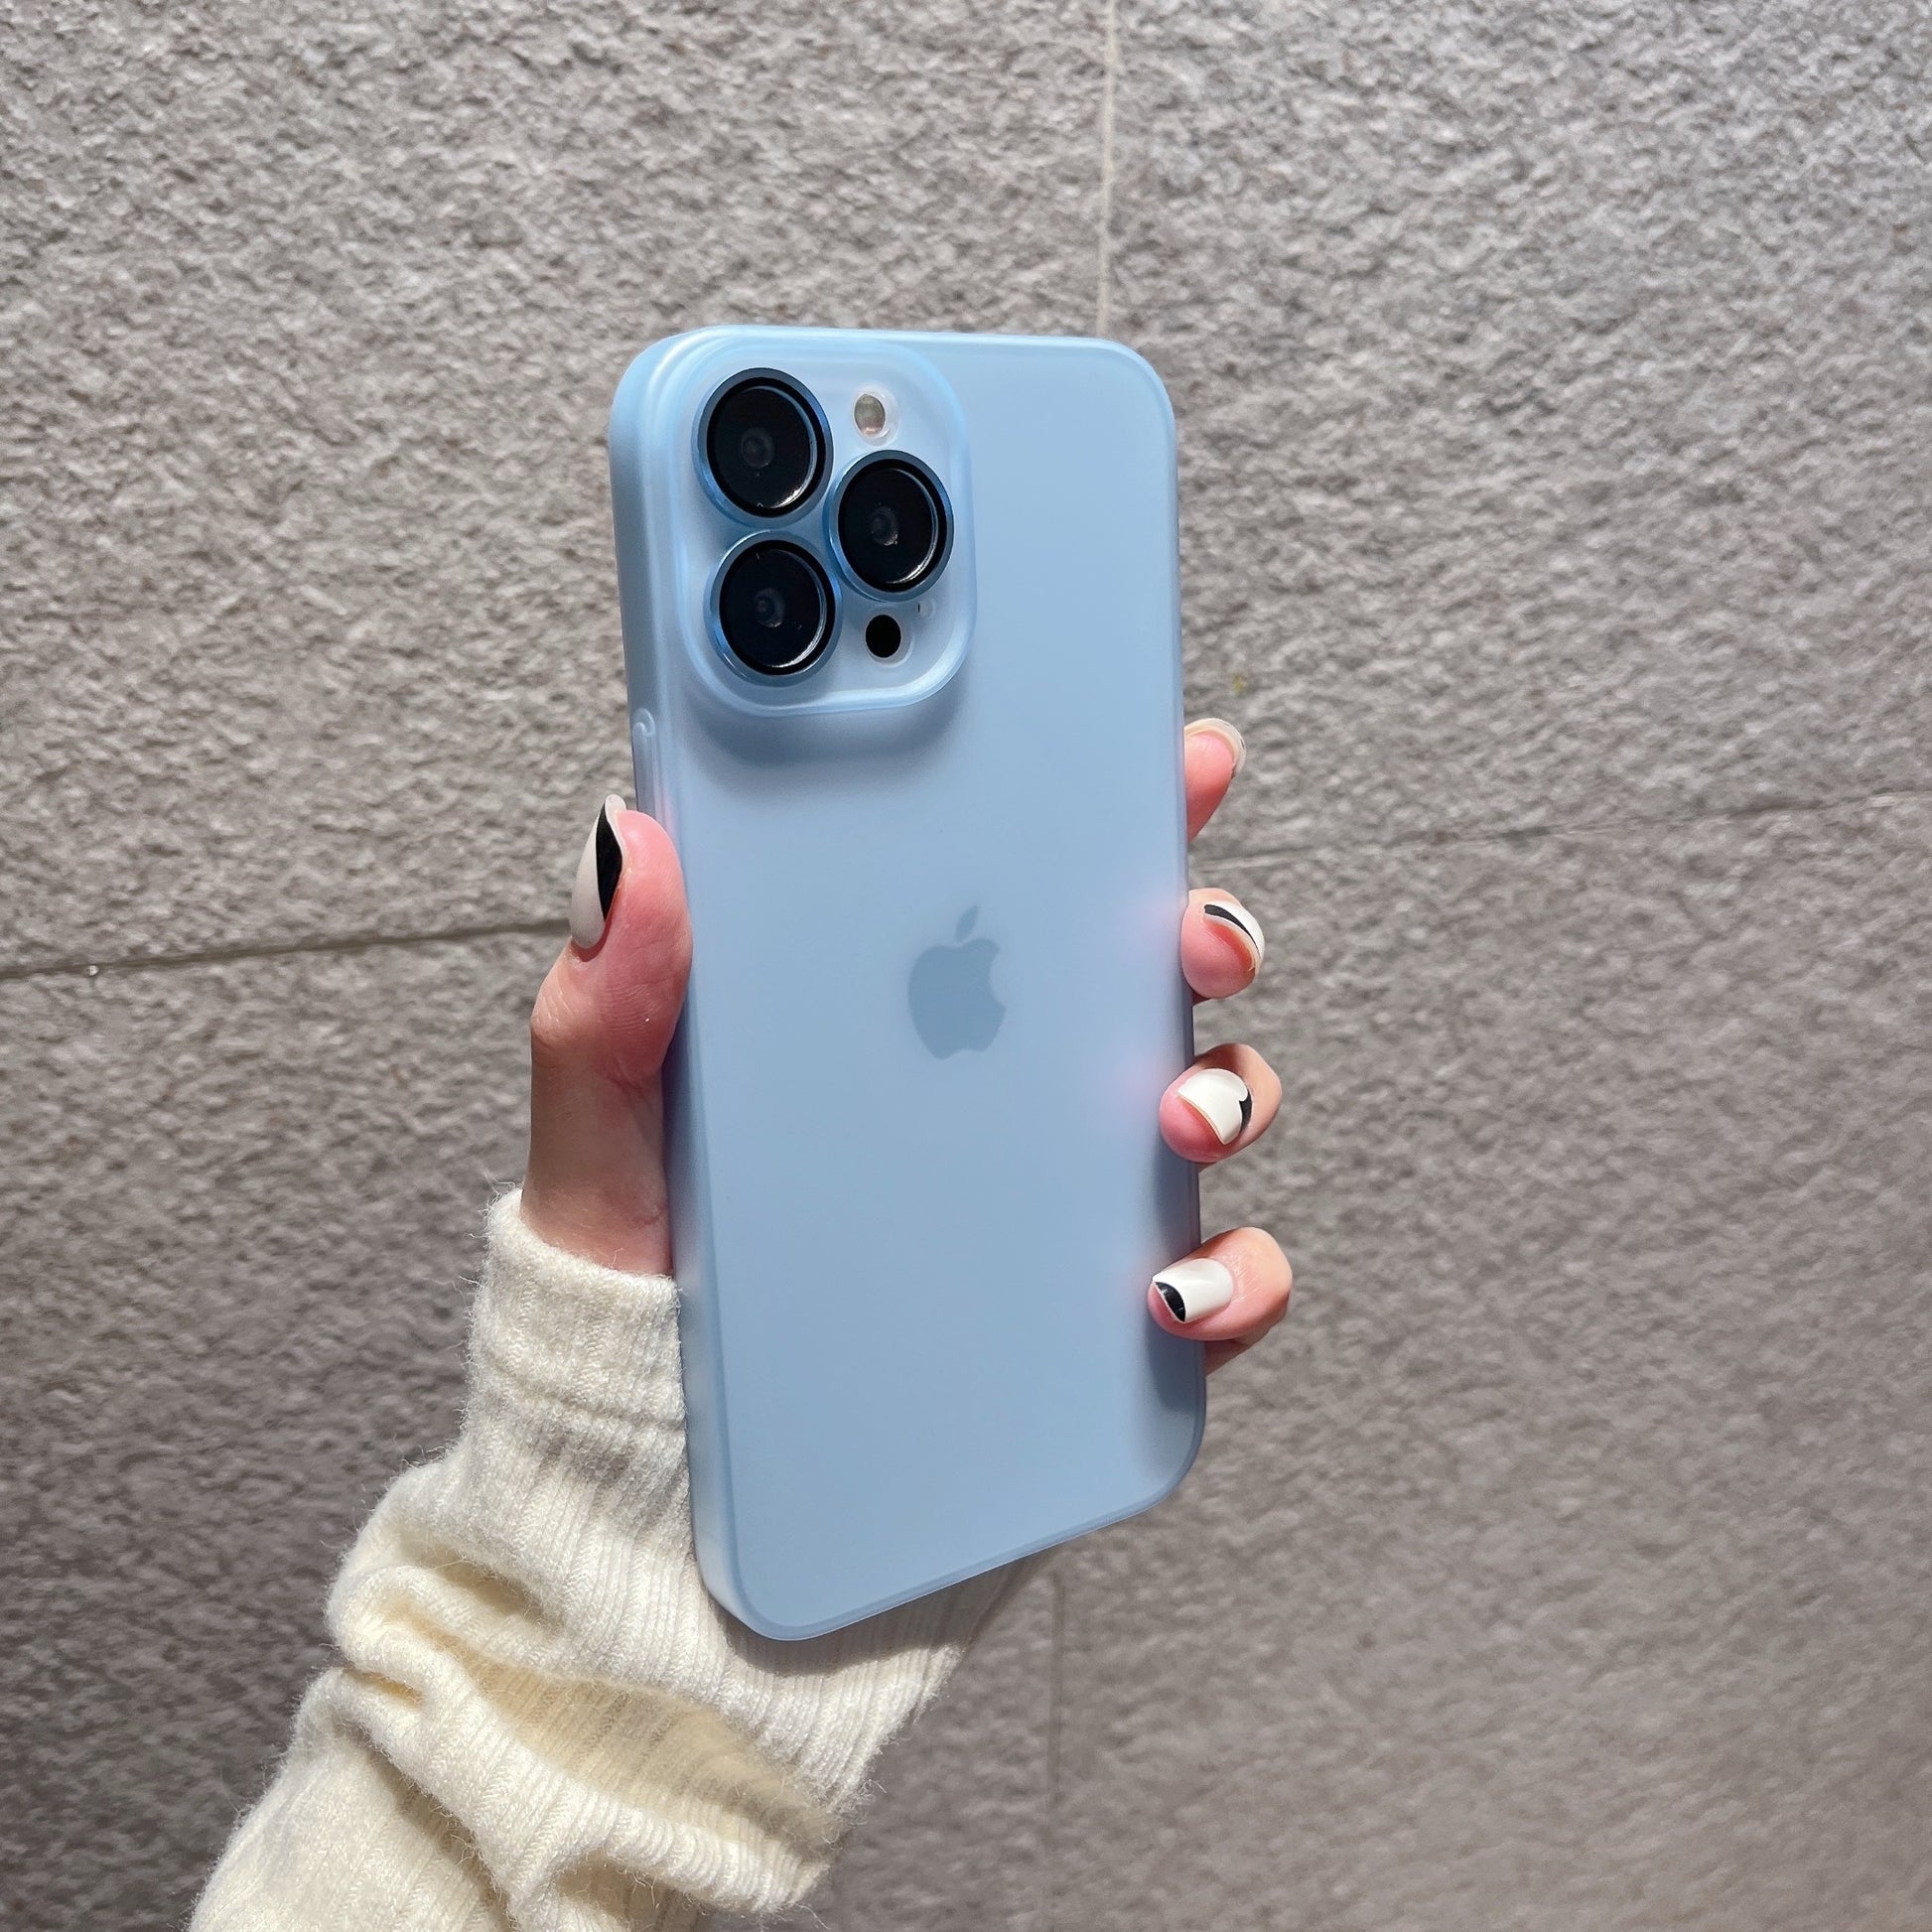 Modische iPhone Hülle in durchsichtigen Farben in hellblau